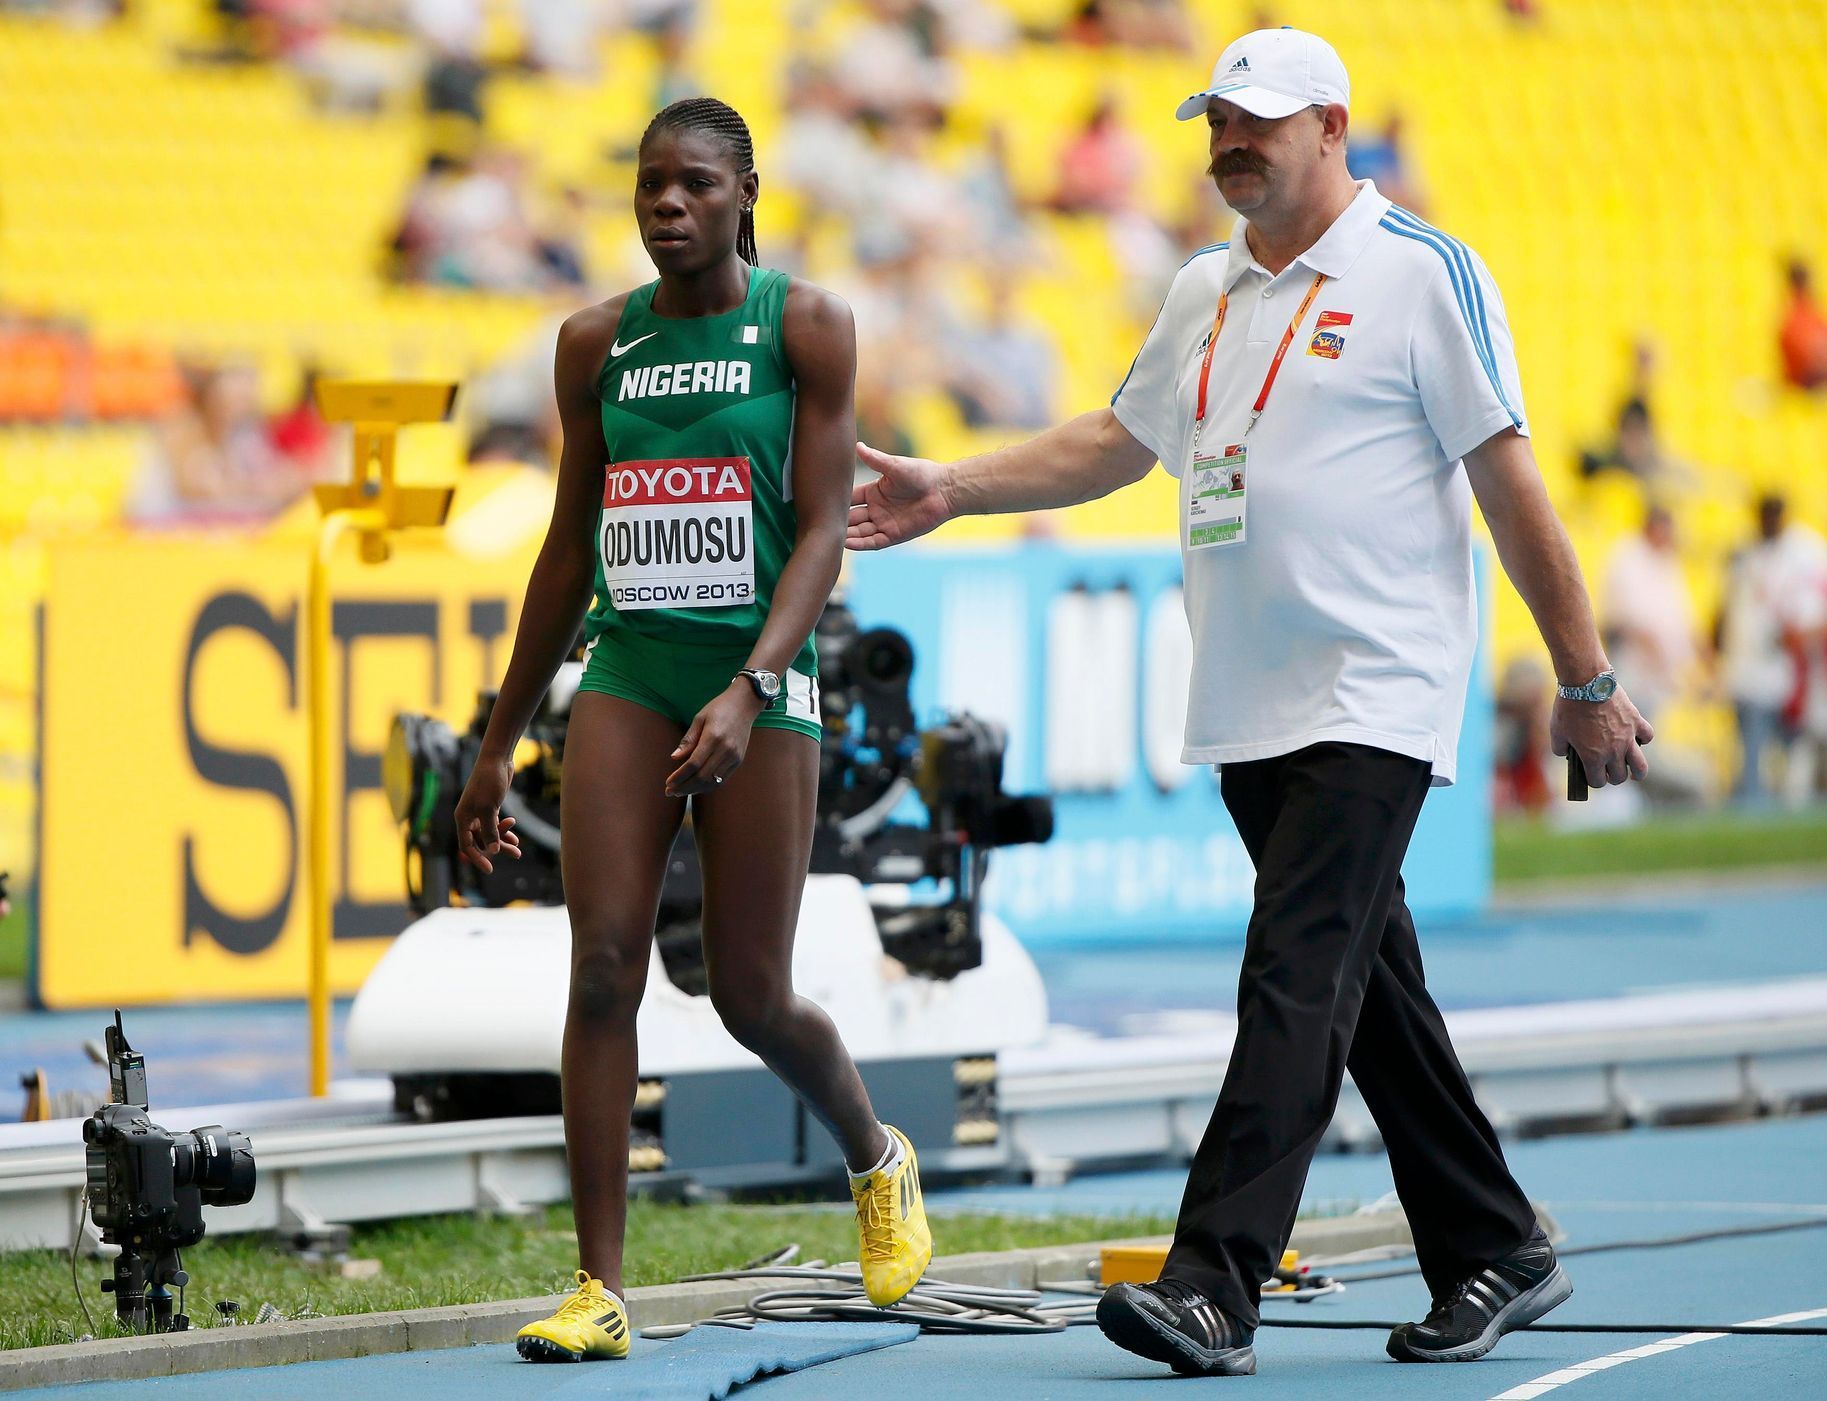 MS v atletice 2013, 400 m př. - rozběh: vyloučená Muizat Ajoke Odumosuová